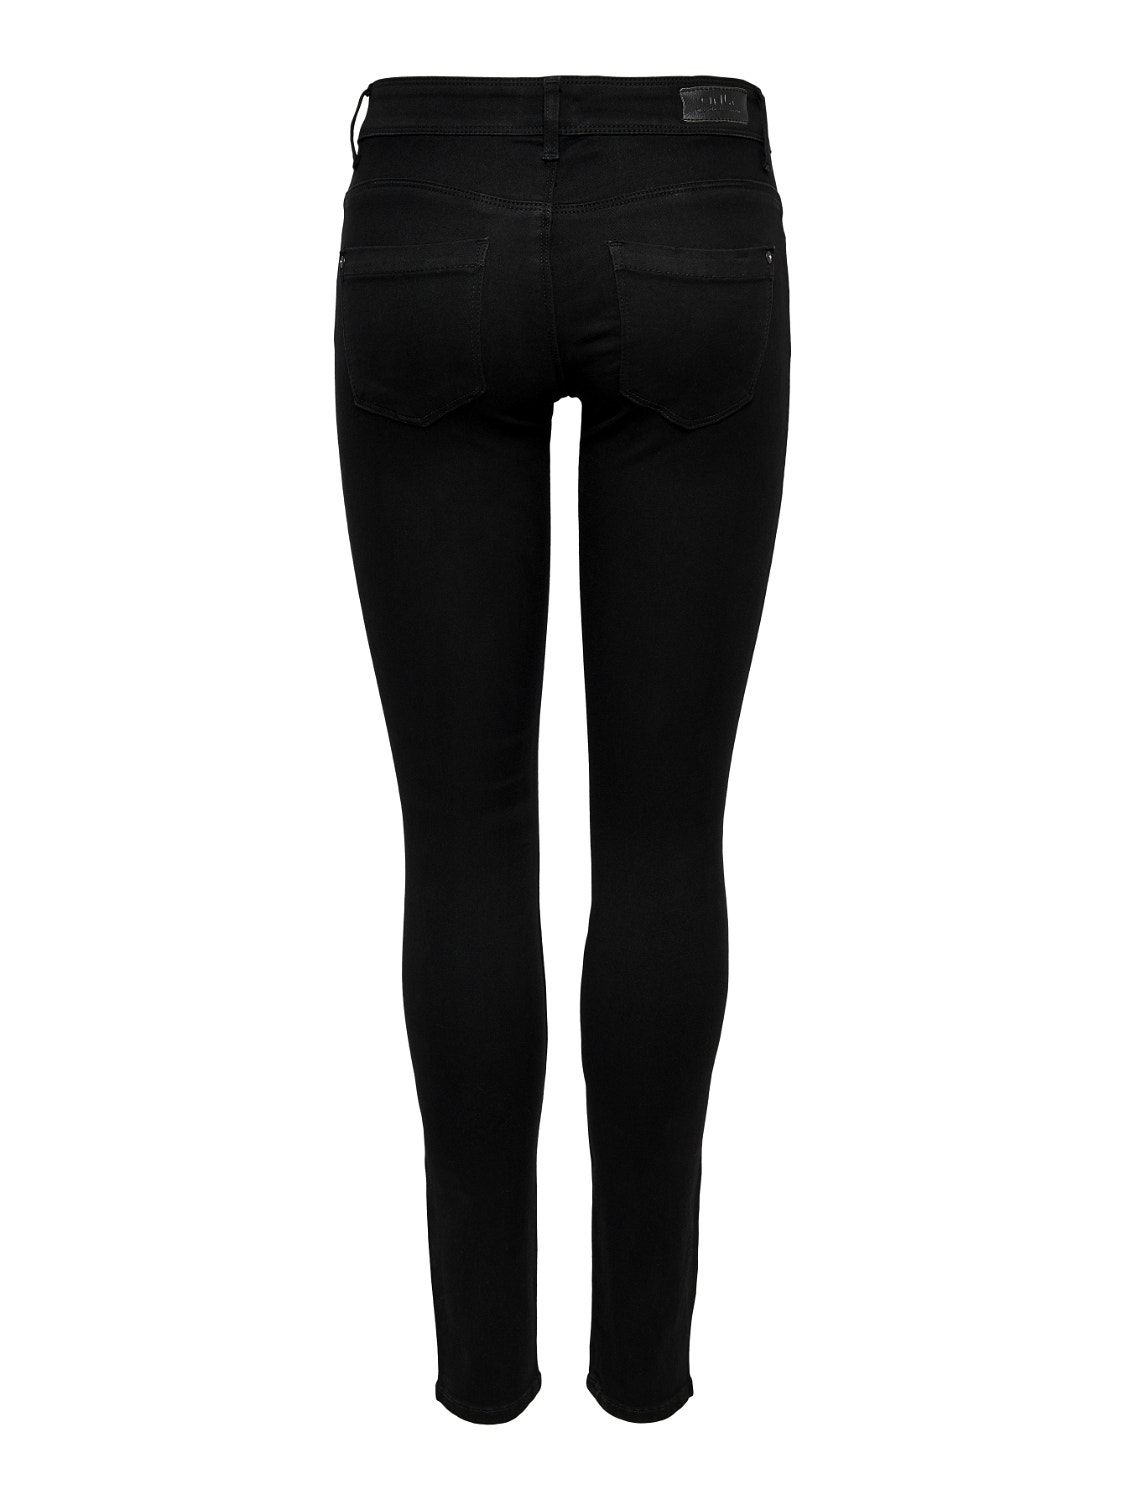 ONLY Jeans Skinny Fit -Black Denim - 15077793